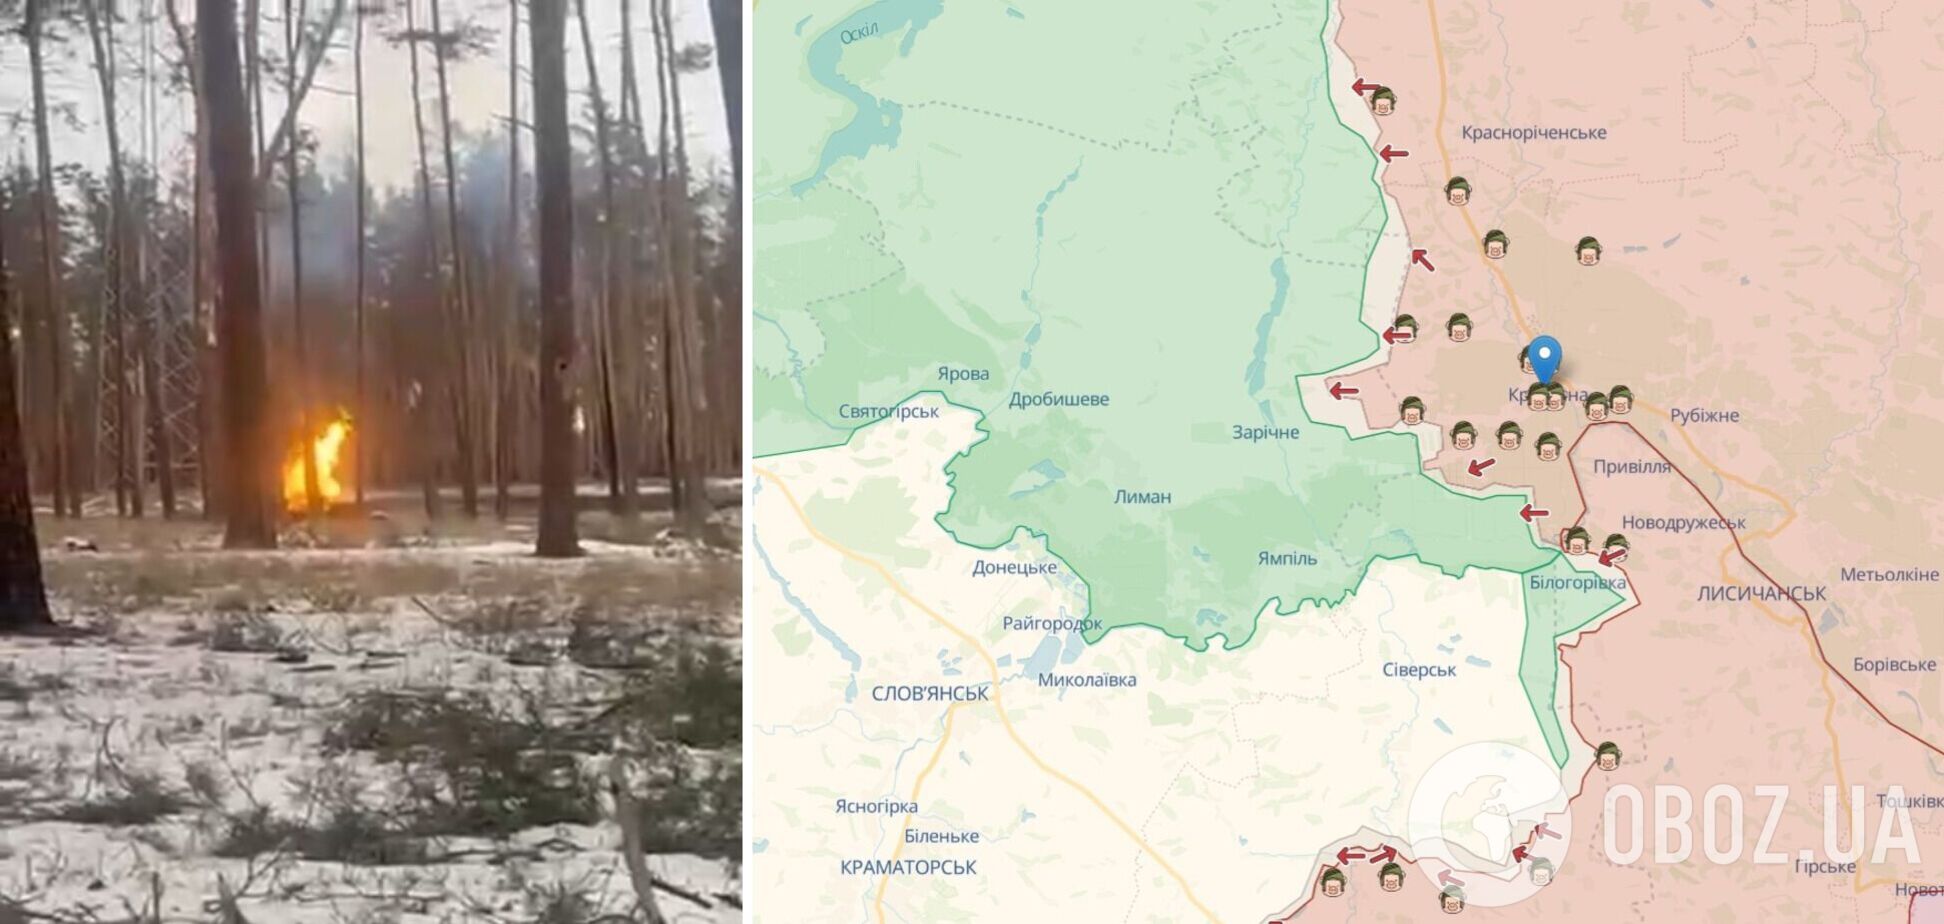 'Получилось пламя на миллион': оккупанты на Луганщине пытались прорваться ротой танков, но получили мощный отпор от ВСУ. Видео